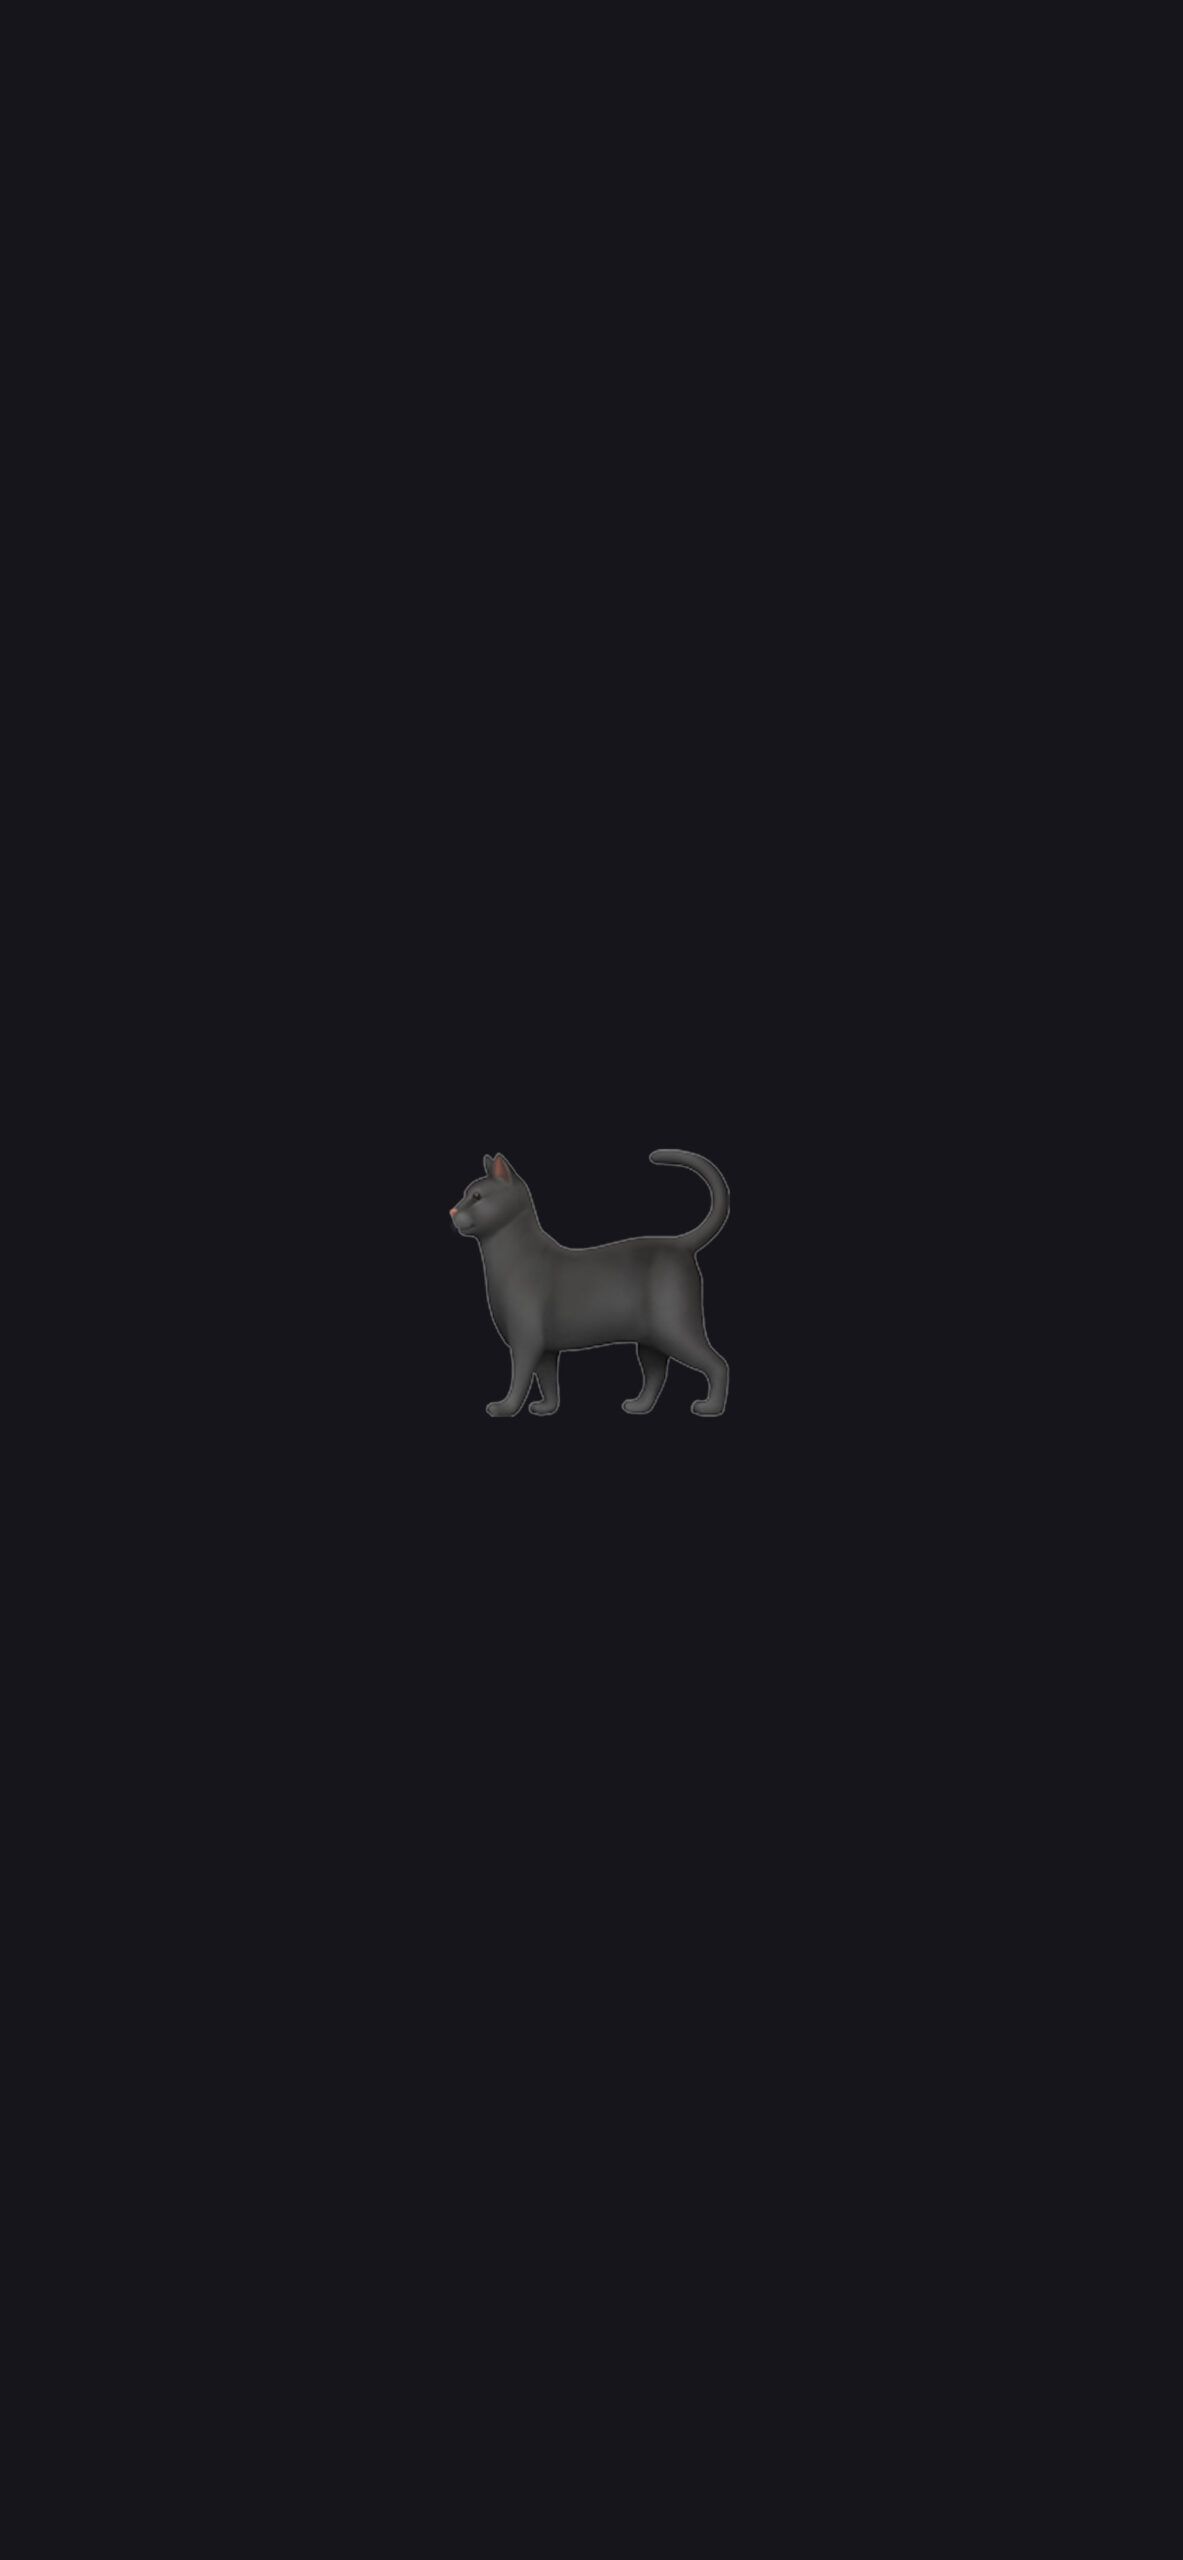 Minimalist Emoji Wallpaper w Black Cat, Tiger & Leopard